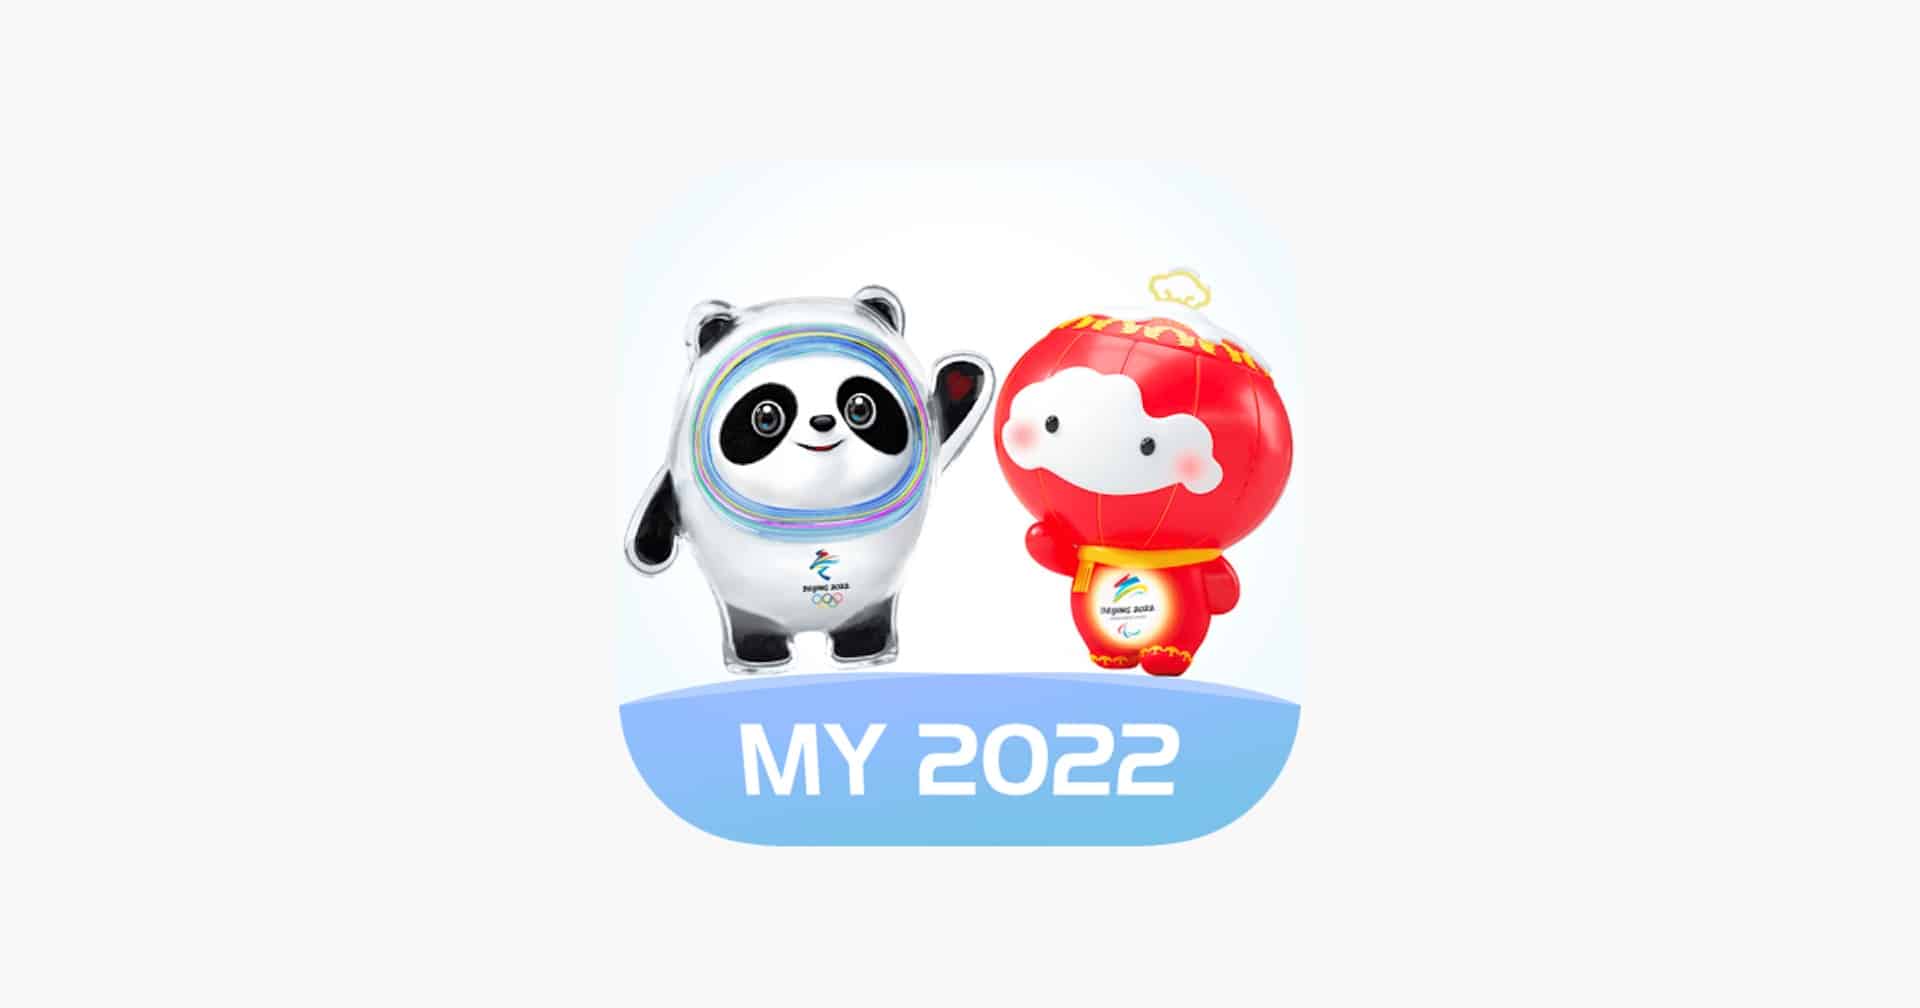 Aperçu de l'app My 2022.